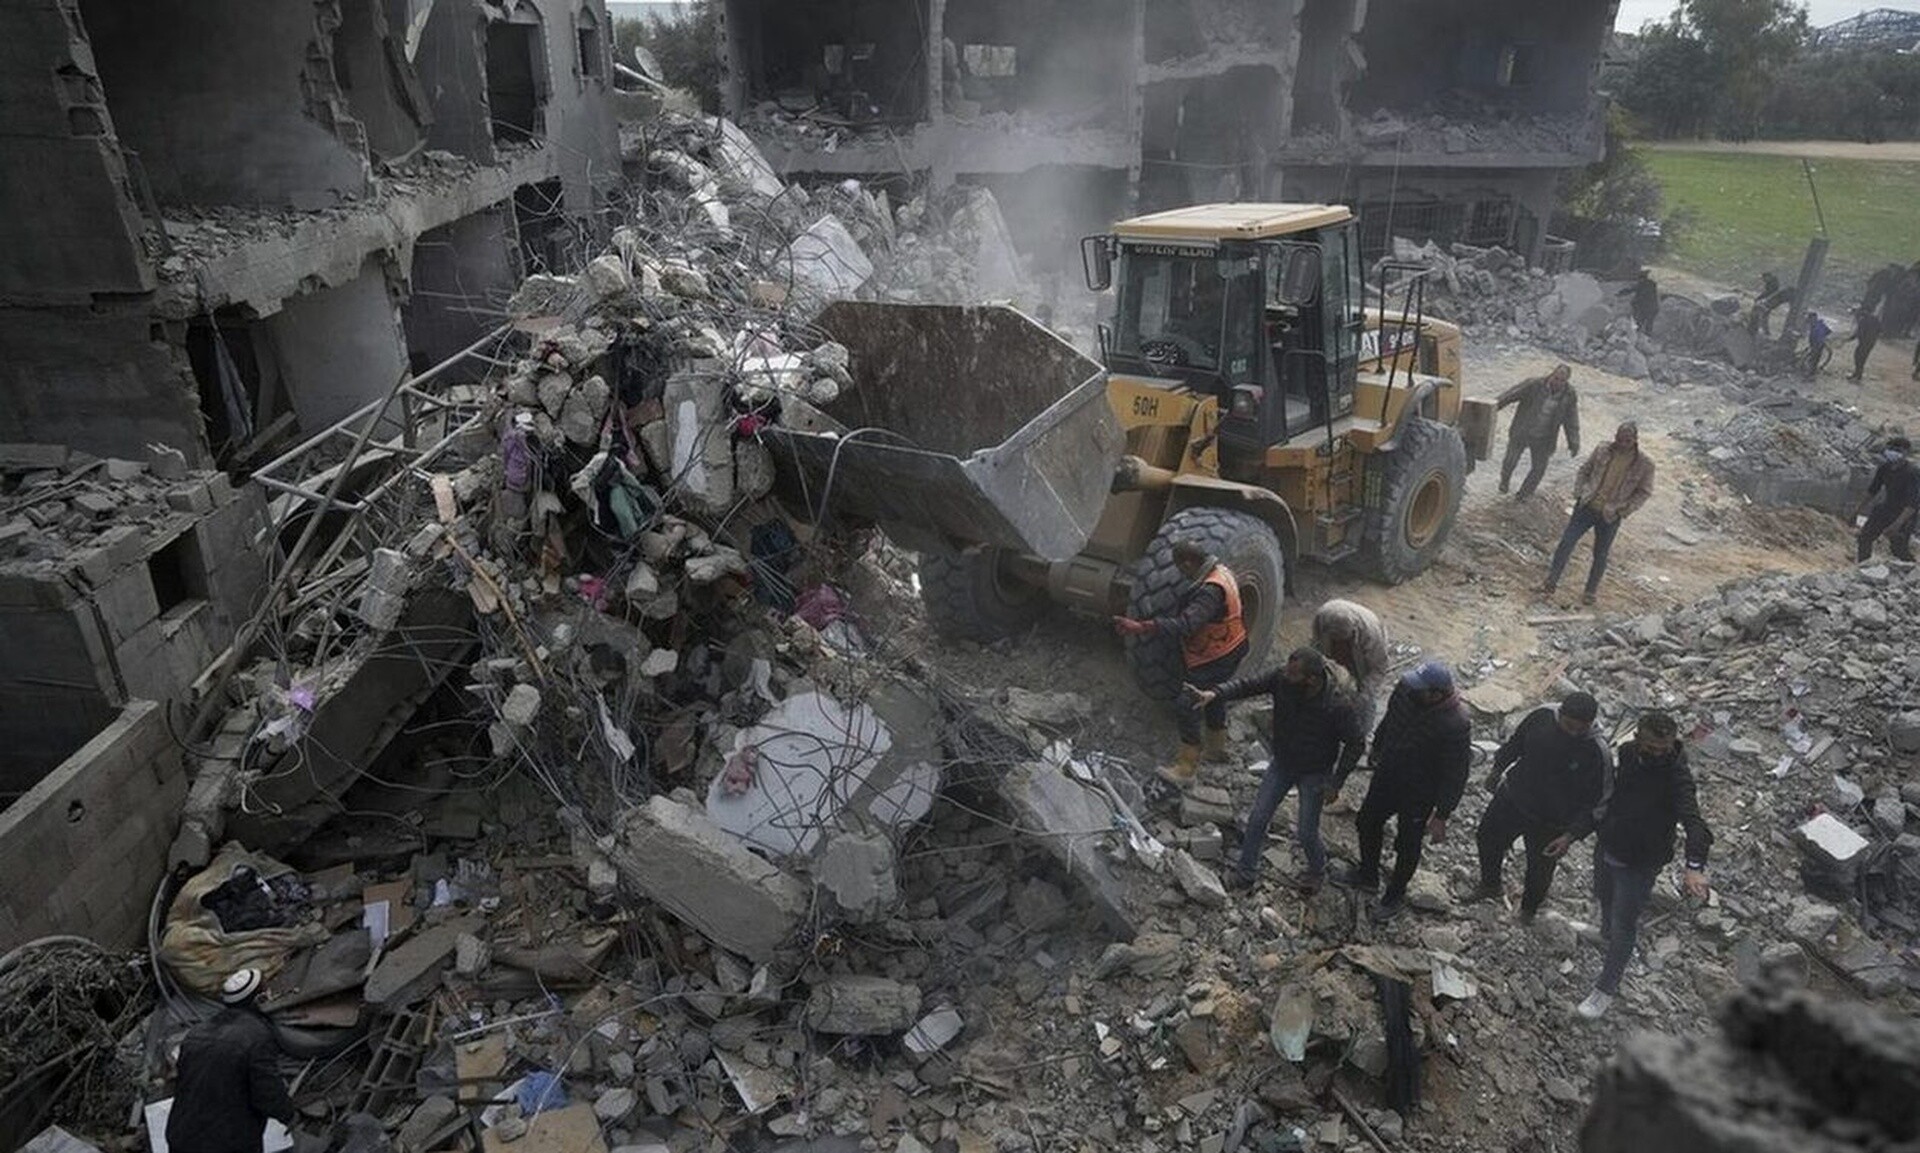 Γάζα: Βρέθηκαν ομαδικοί τάφοι στο νοσοκομείο Νάσερ